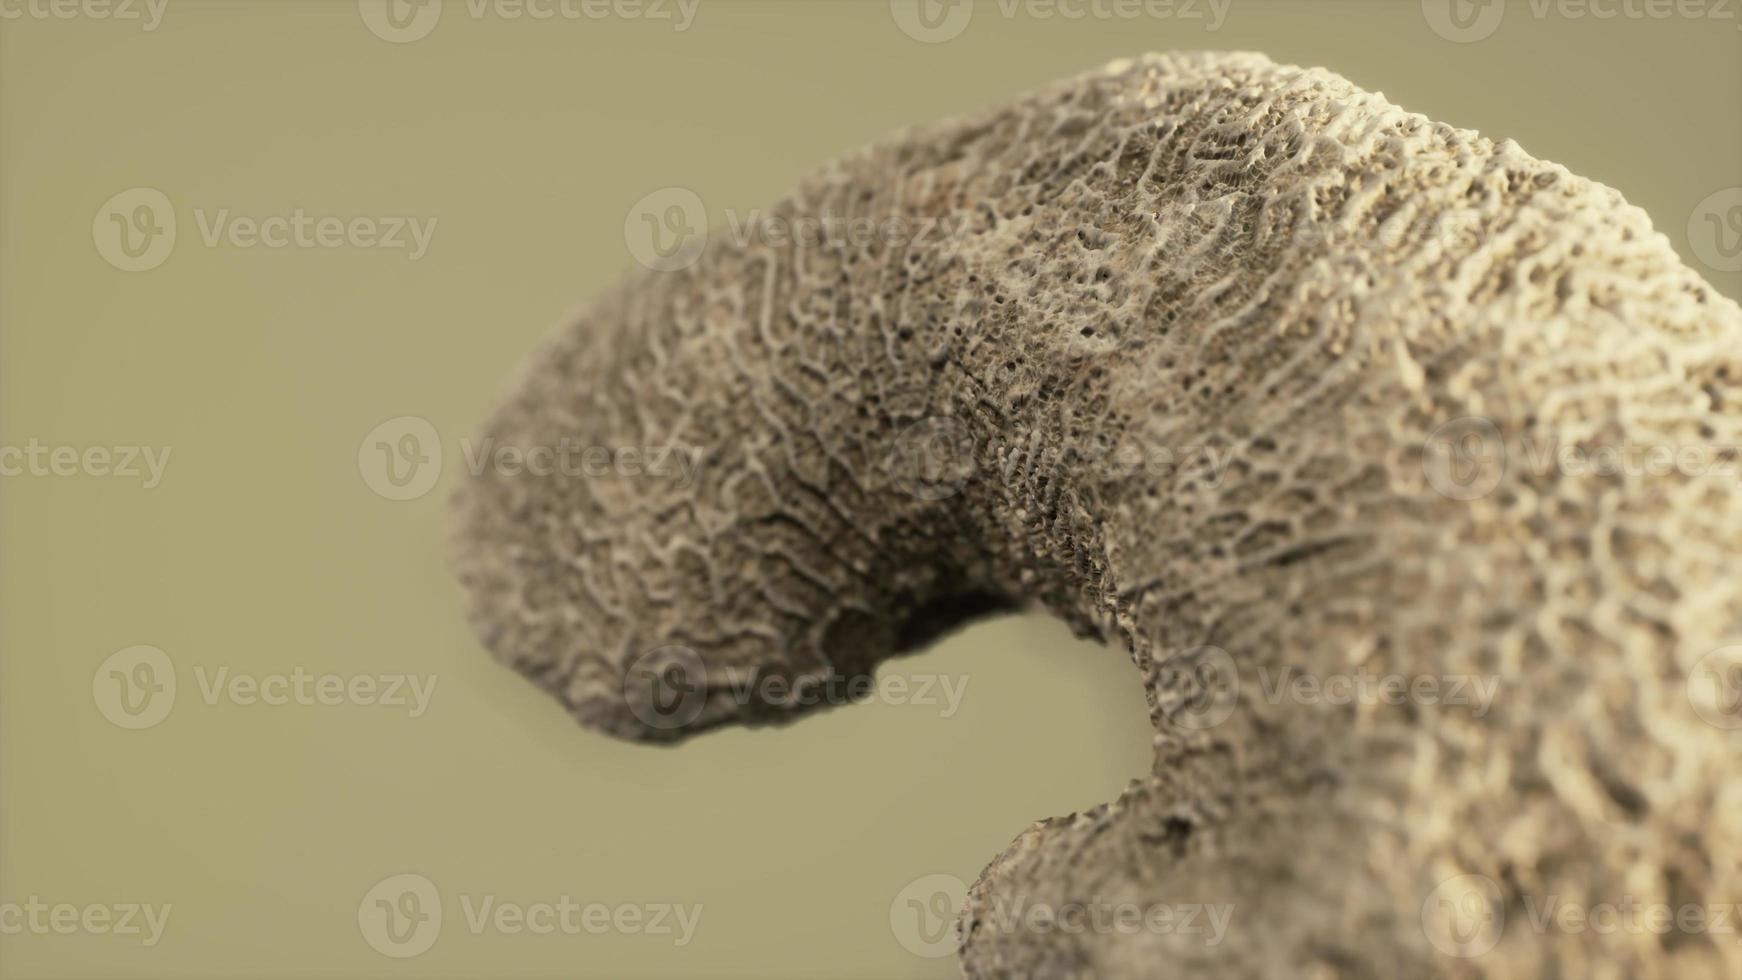 grote witte koraal fossiele close-up foto